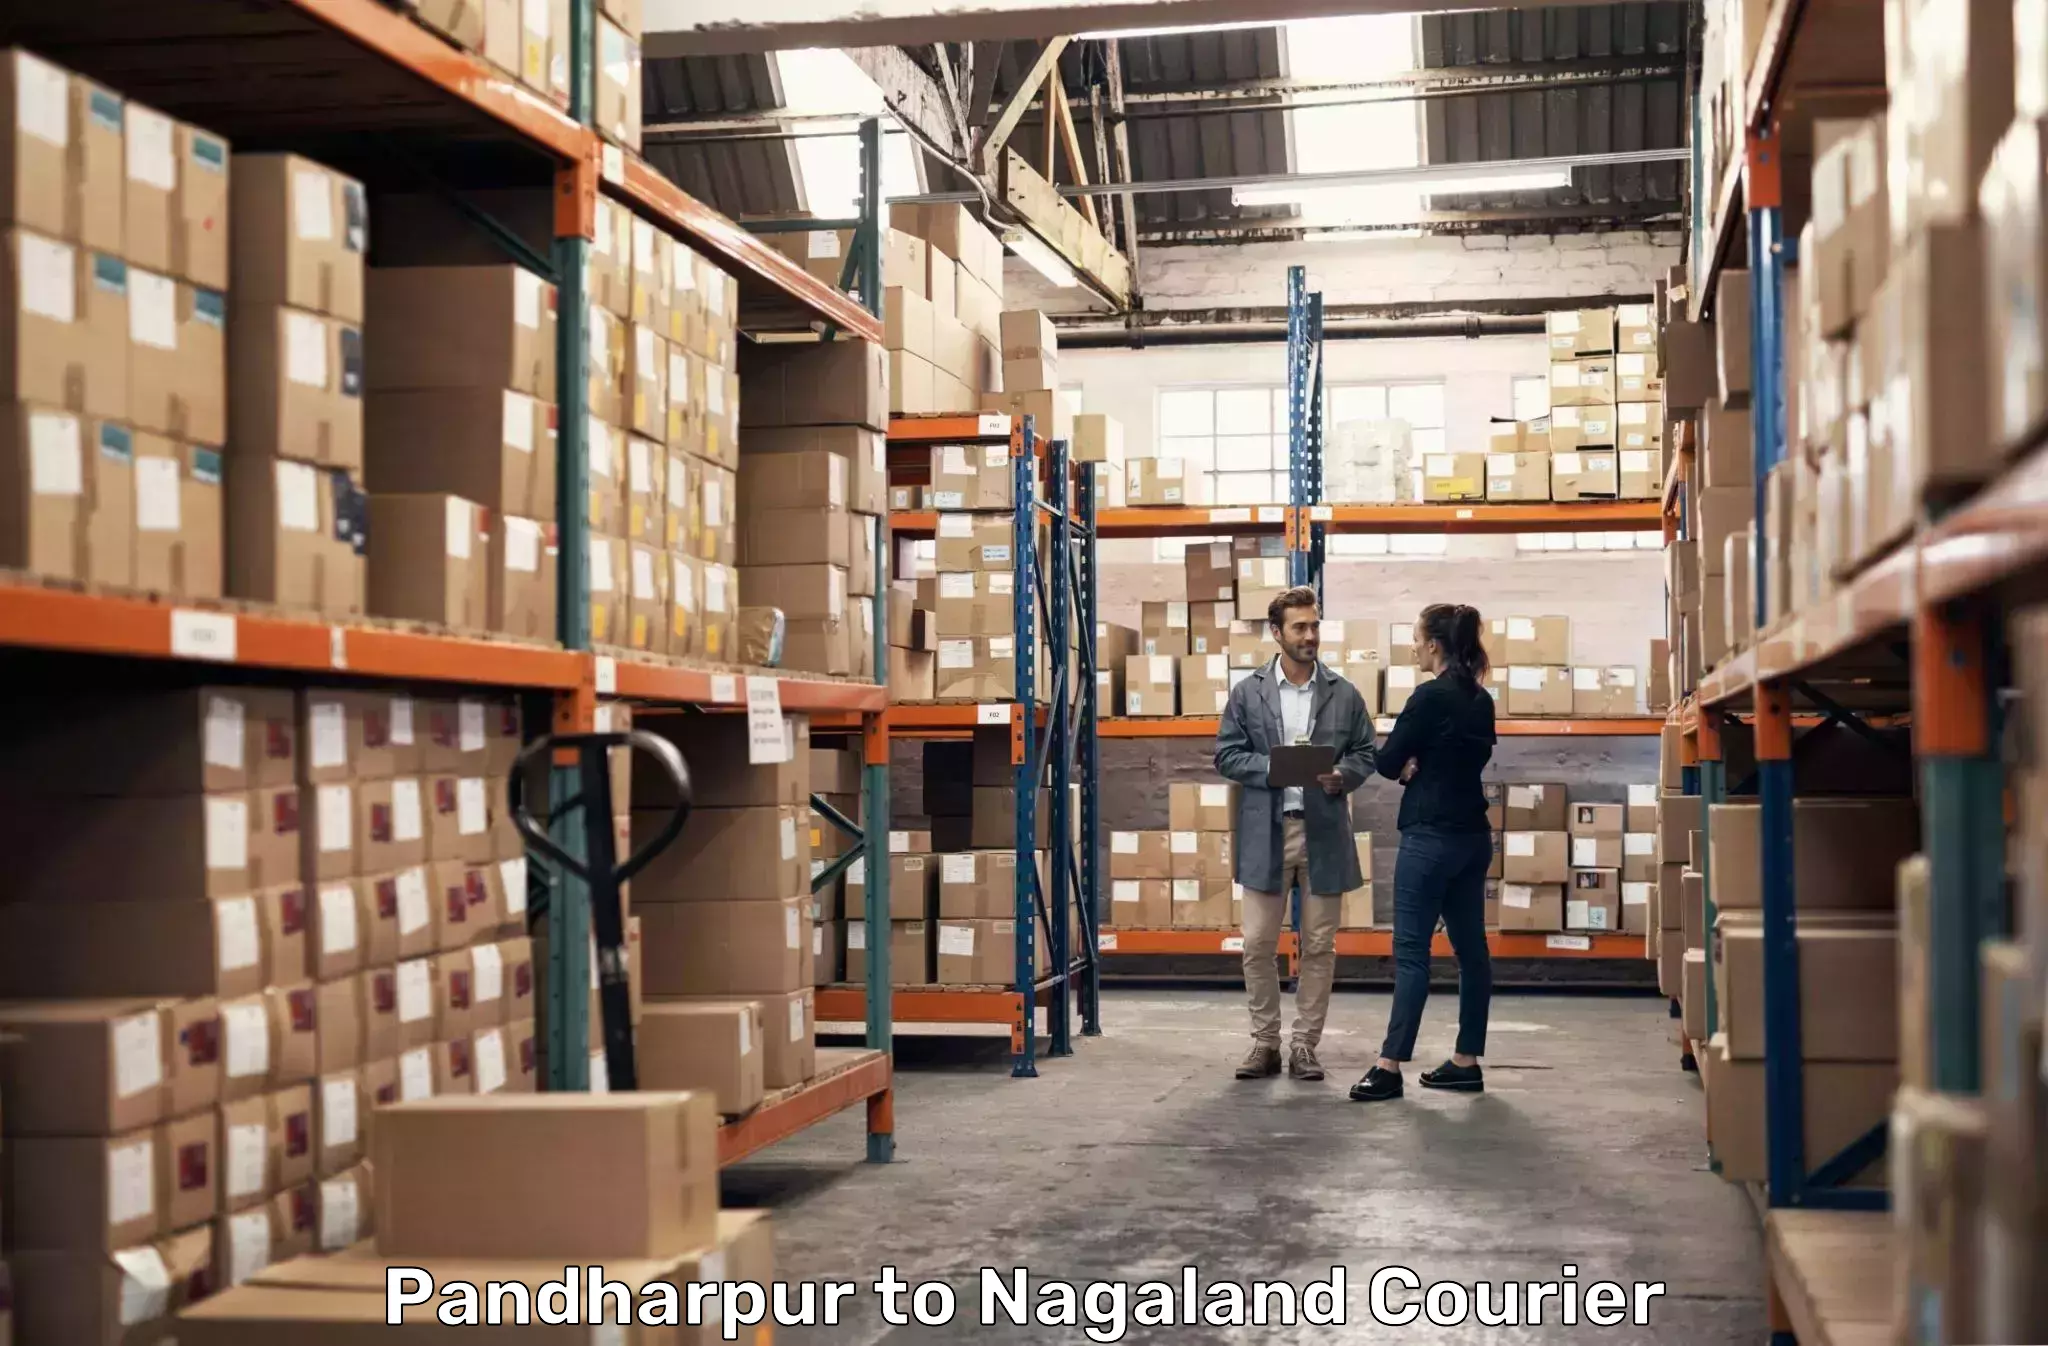 Customer-focused courier Pandharpur to Longleng